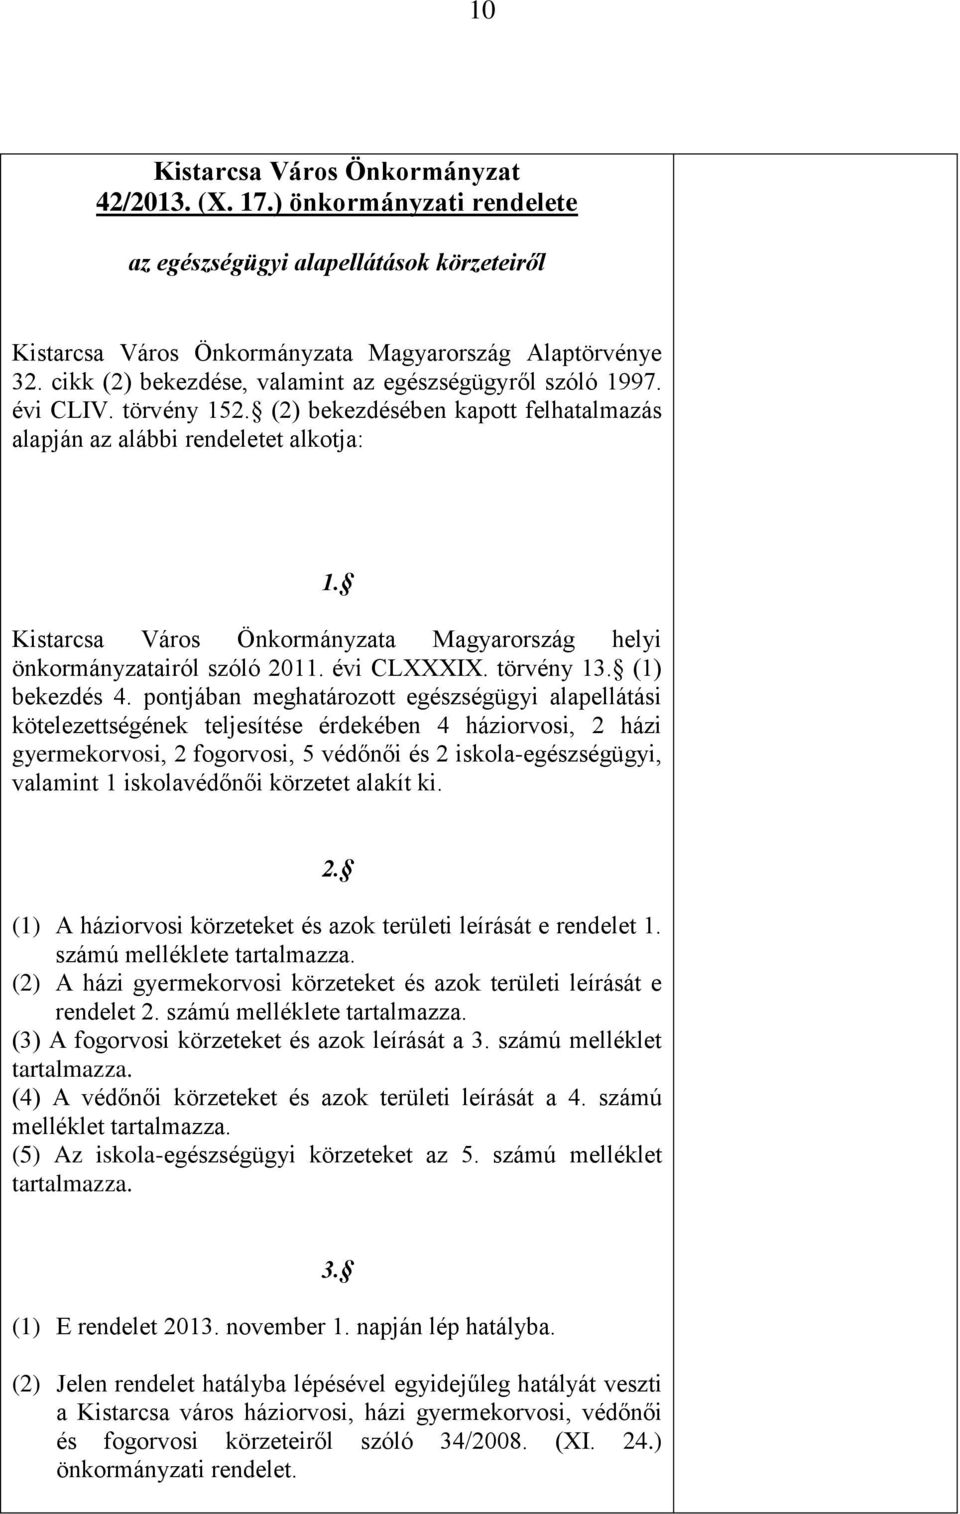 Kistarcsa Város Önkormányzata Magyarország helyi önkormányzatairól szóló 2011. évi CLXXXIX. törvény 13. (1) bekezdés 4.